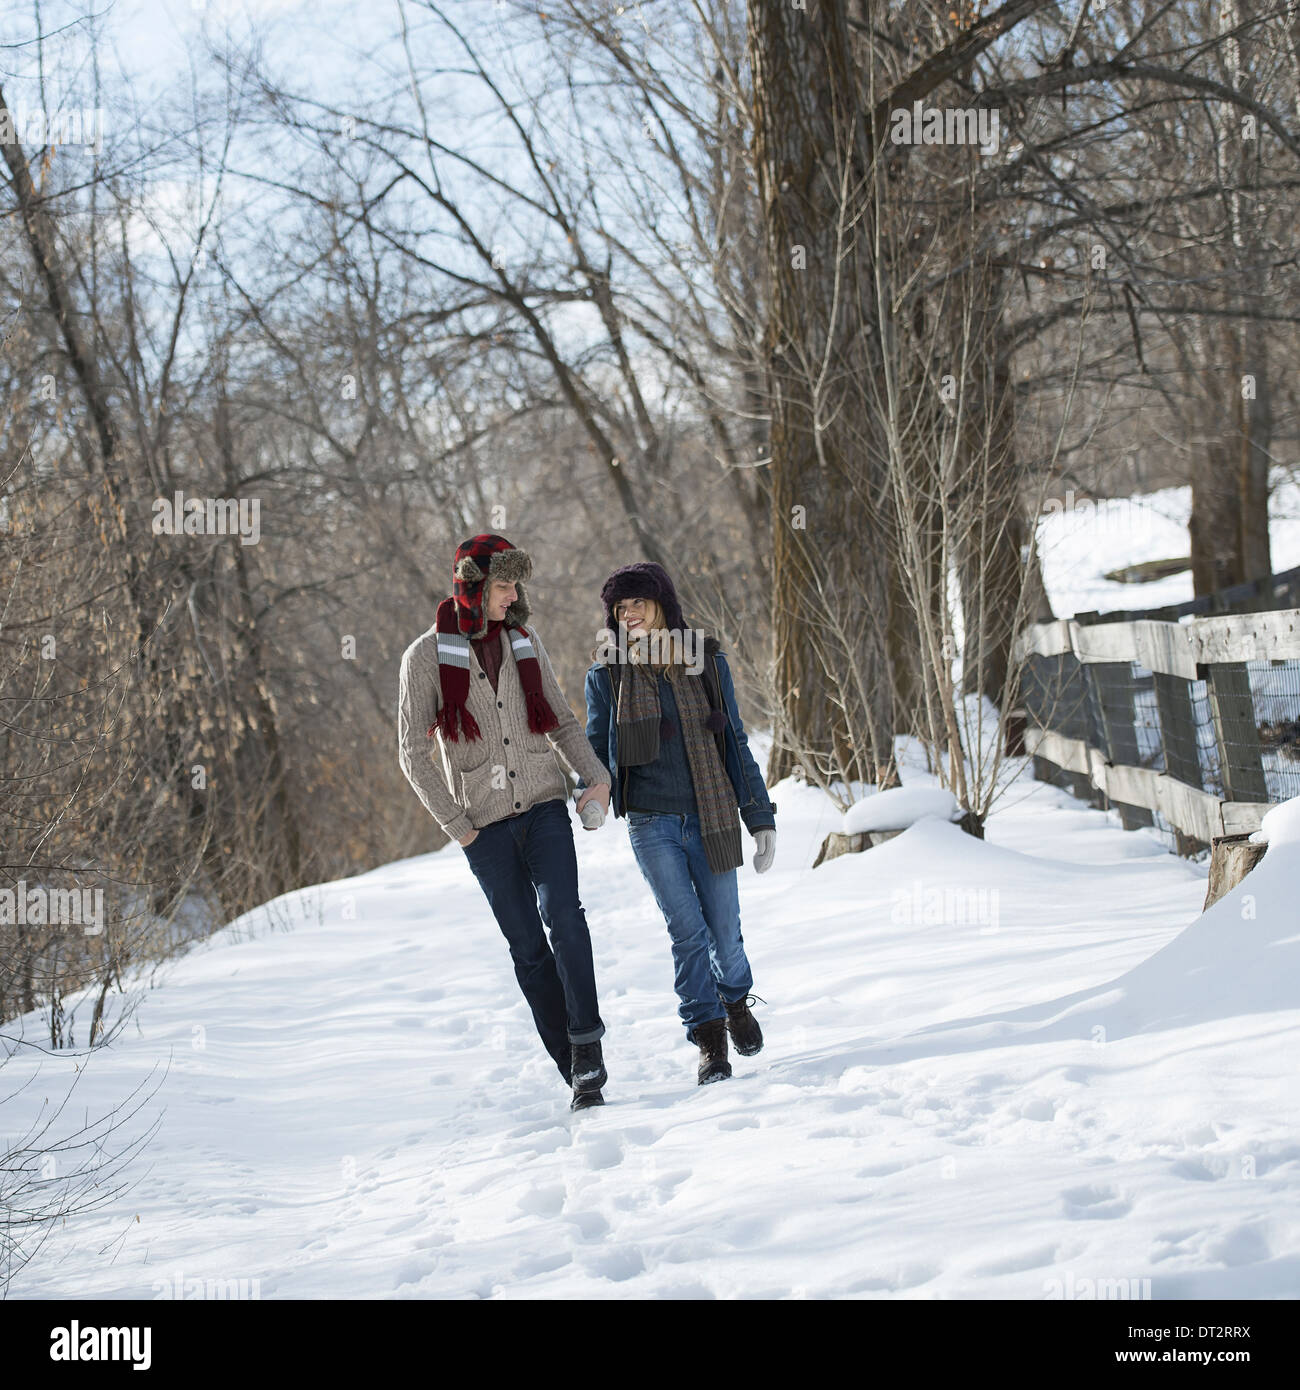 Paesaggio invernale con la neve sulla terra un paio camminando mano nella mano lungo un percorso Foto Stock